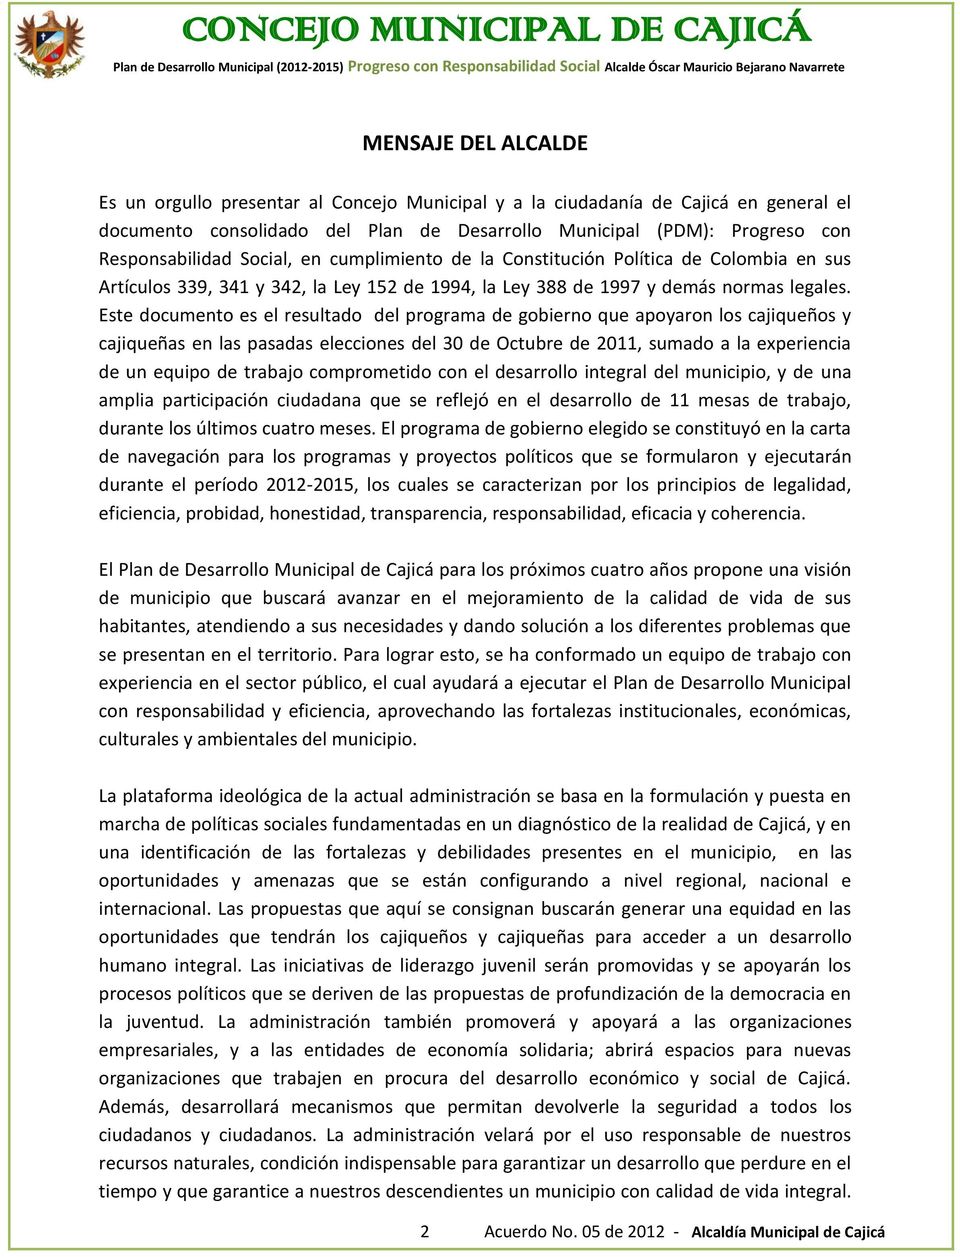 Este documento es el resultado del programa de gobierno que apoyaron los cajiqueños y cajiqueñas en las pasadas elecciones del 30 de Octubre de 2011, sumado a la experiencia de un equipo de trabajo